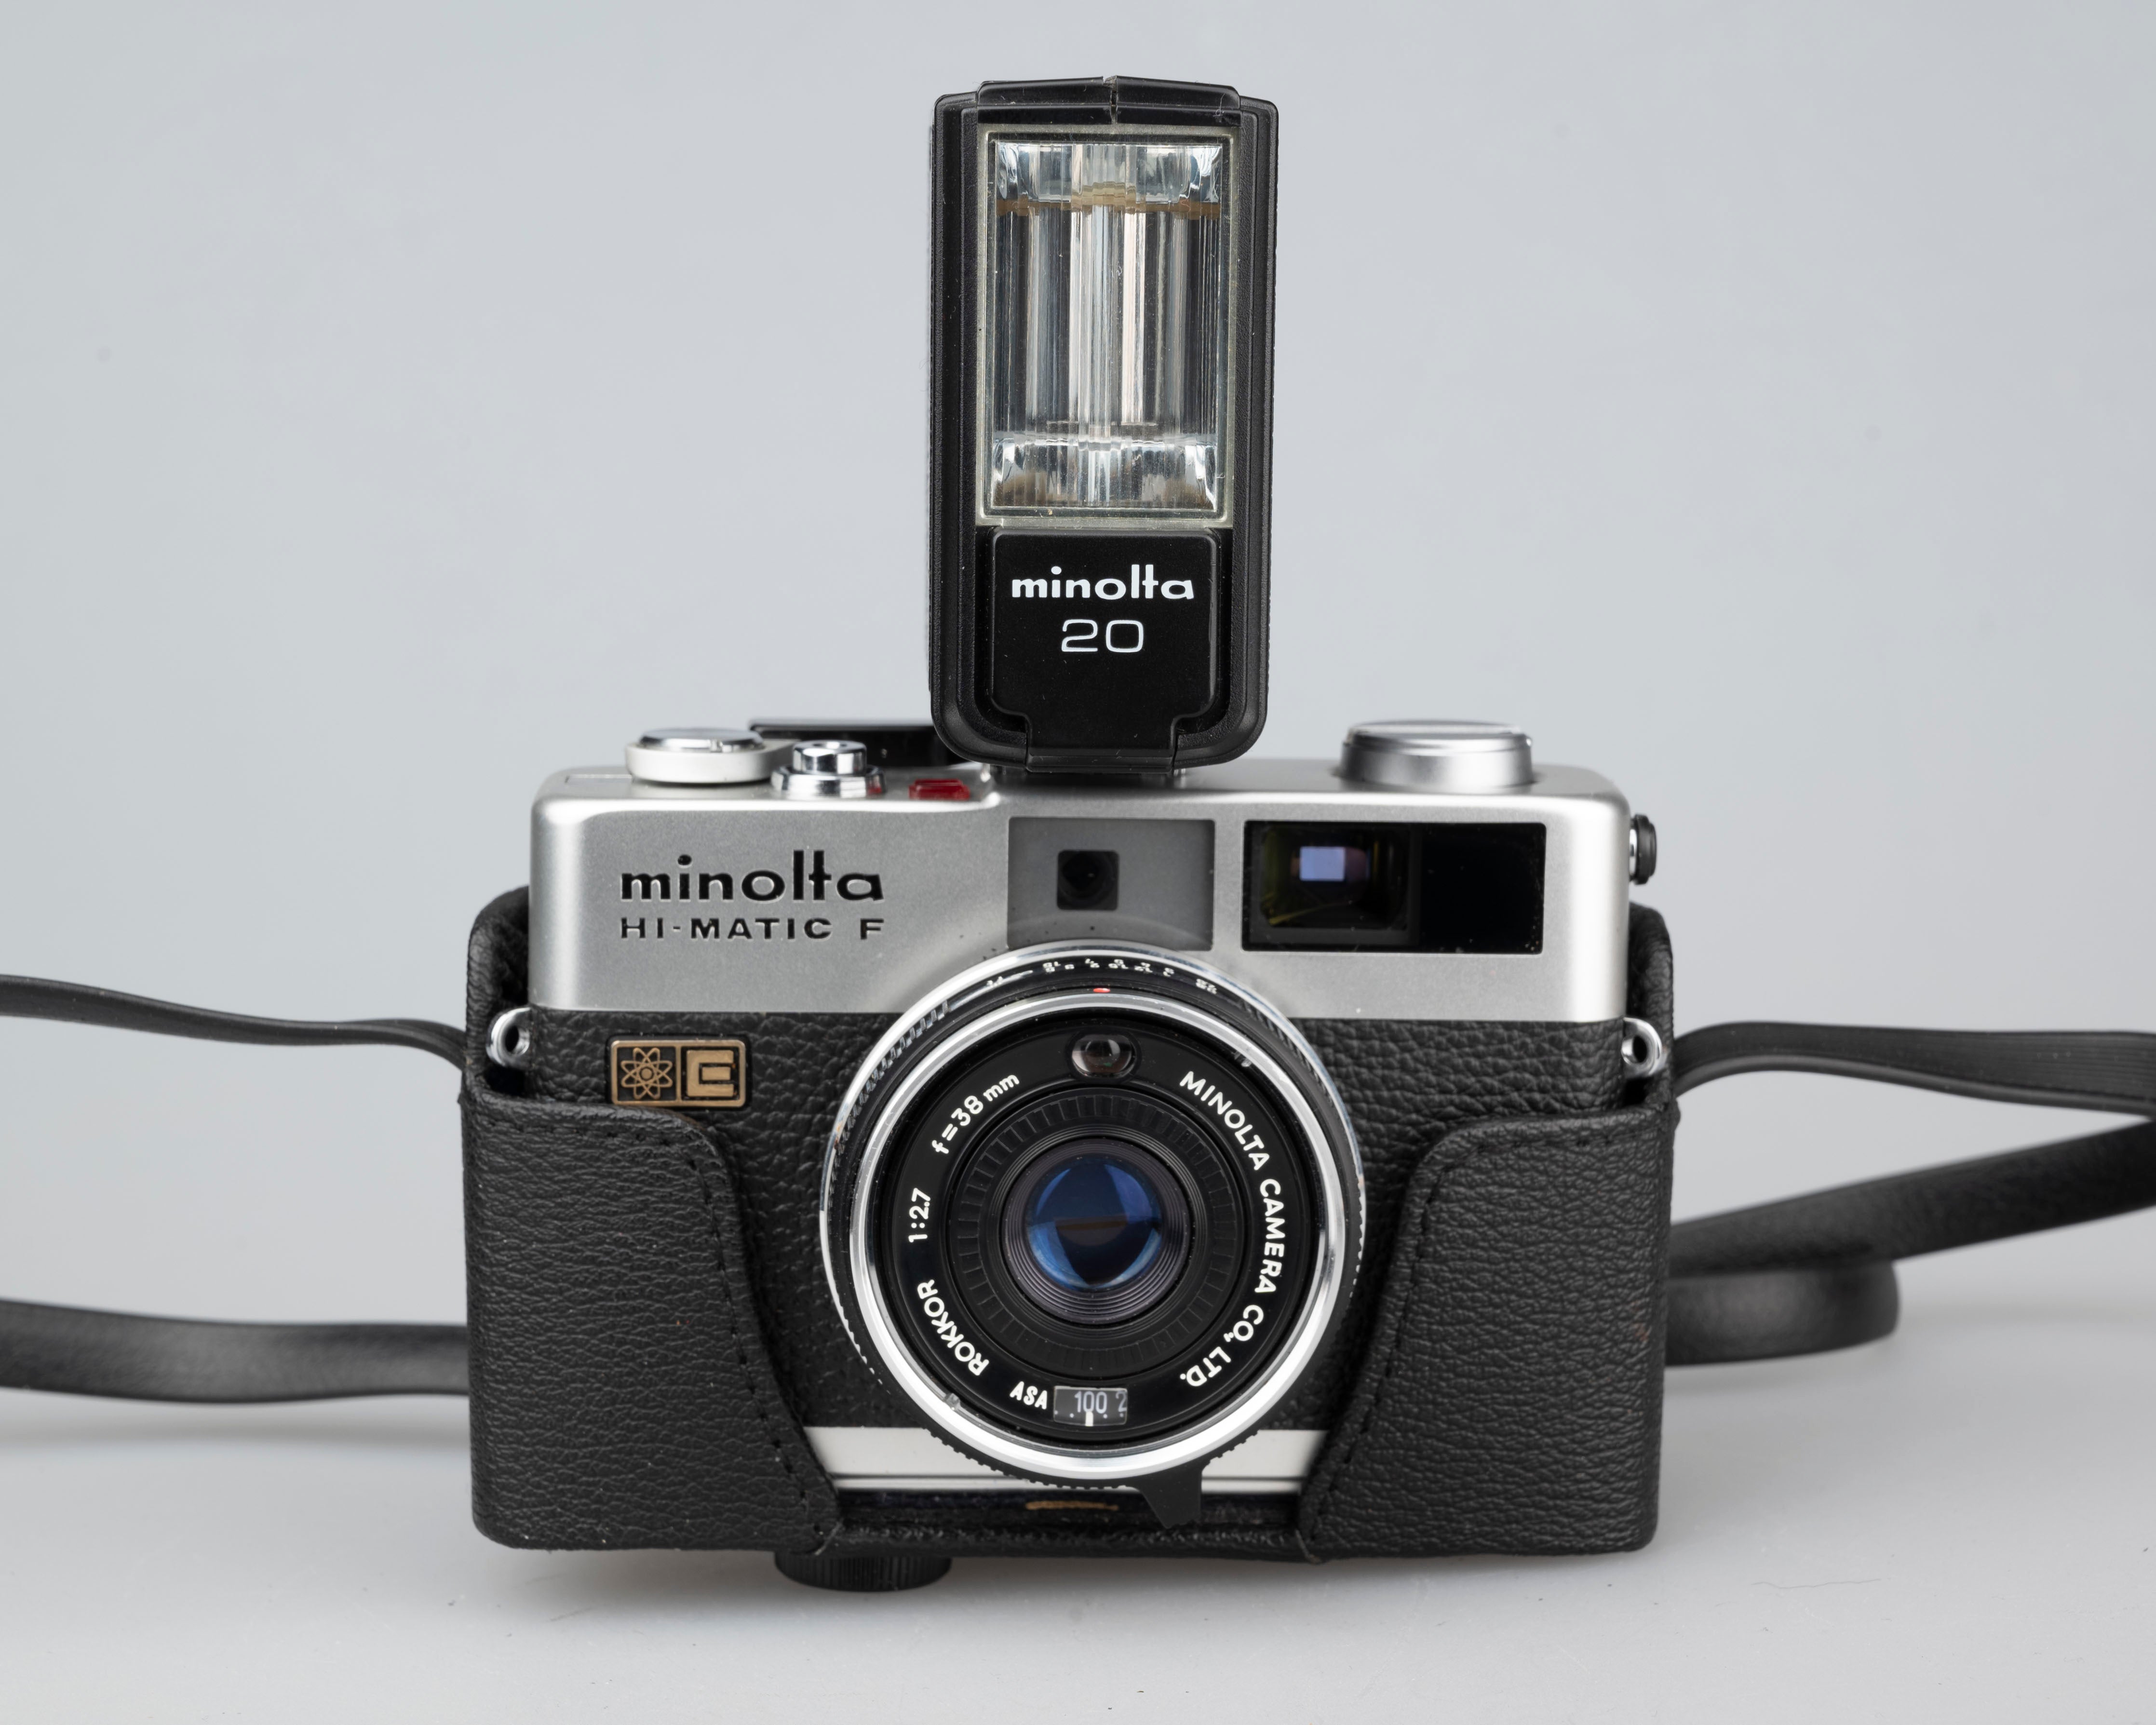 Minolta Hi-Matic F compact 35mm rangefinder camera w/ Minolta 20